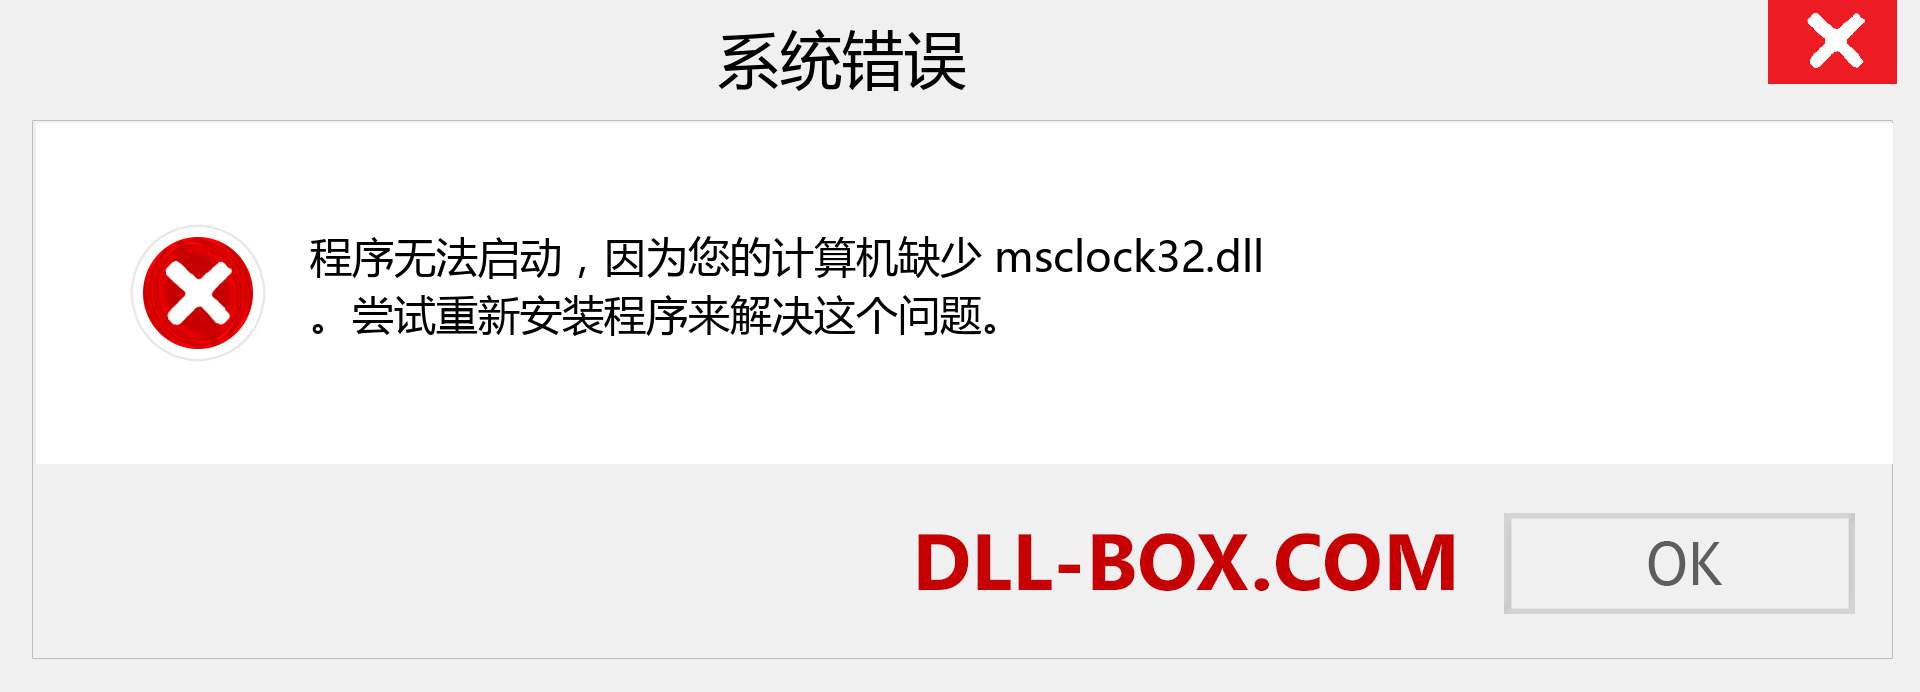 msclock32.dll 文件丢失？。 适用于 Windows 7、8、10 的下载 - 修复 Windows、照片、图像上的 msclock32 dll 丢失错误